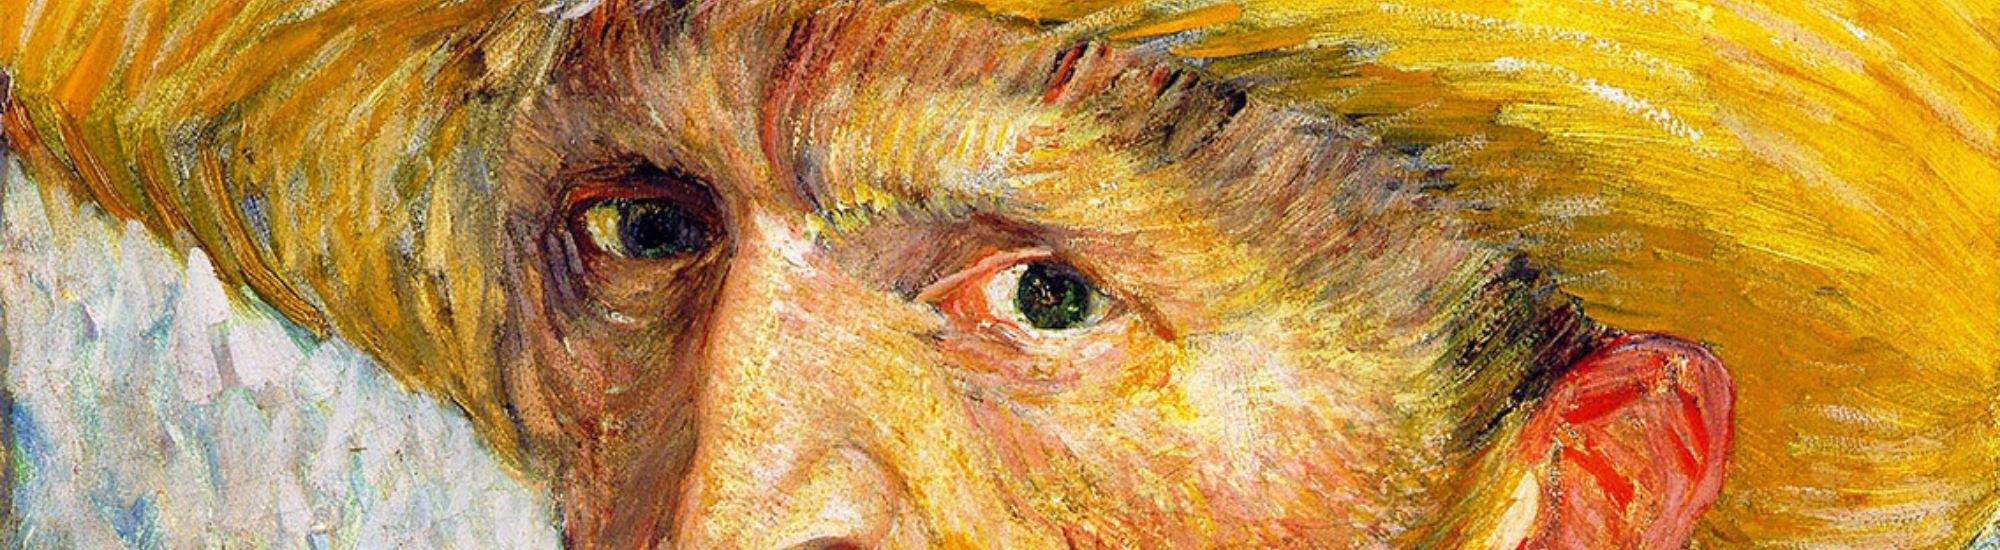 Exposición Multisensorial de Van Gogh en Cracovia: Un Encuentro con la Gran Arte